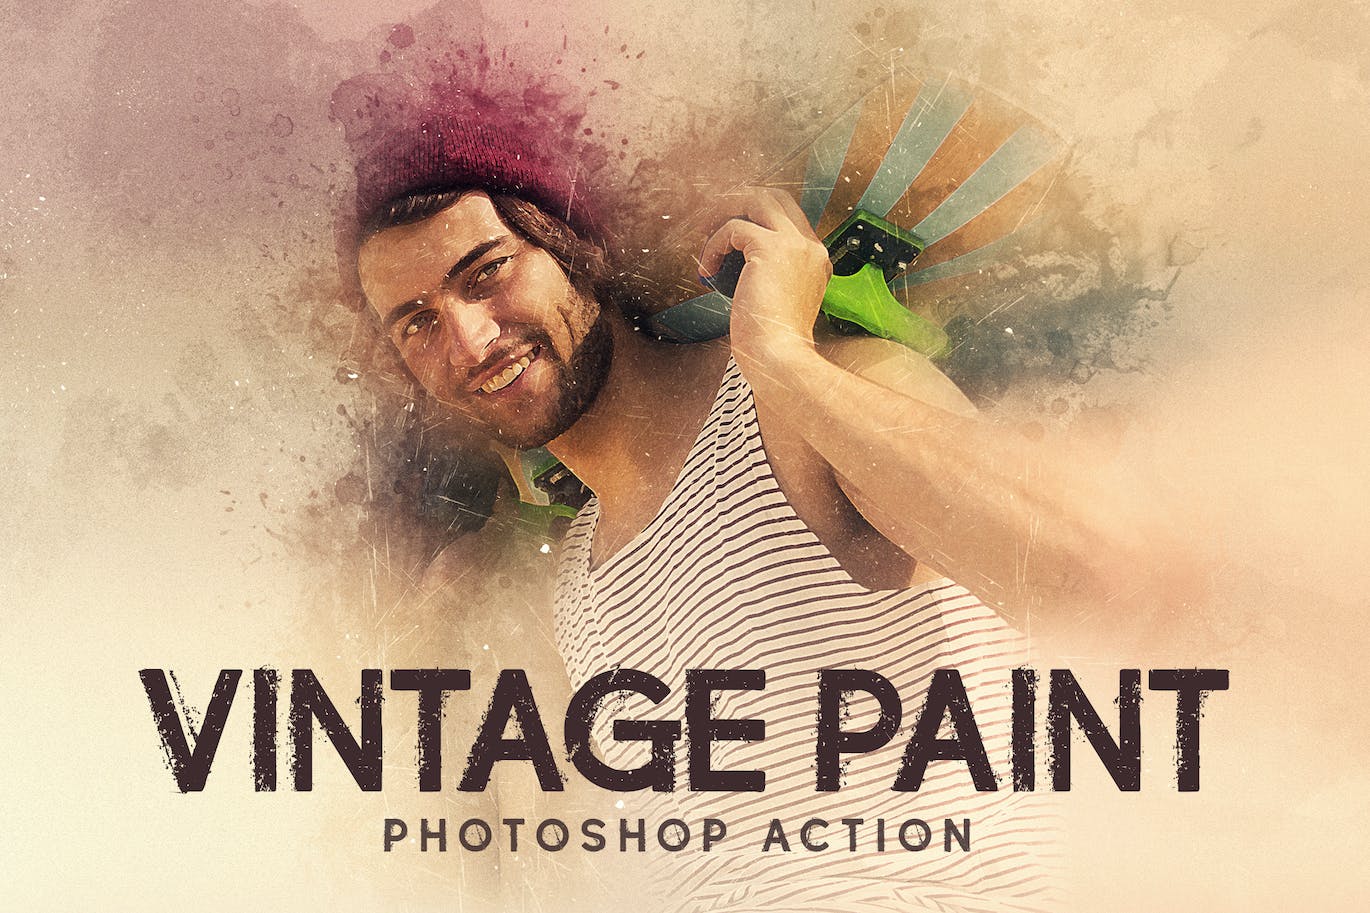 复古油漆涂料照片处理效果PS动作模板 Vintage Paint – Photoshop Action 插件预设 第1张